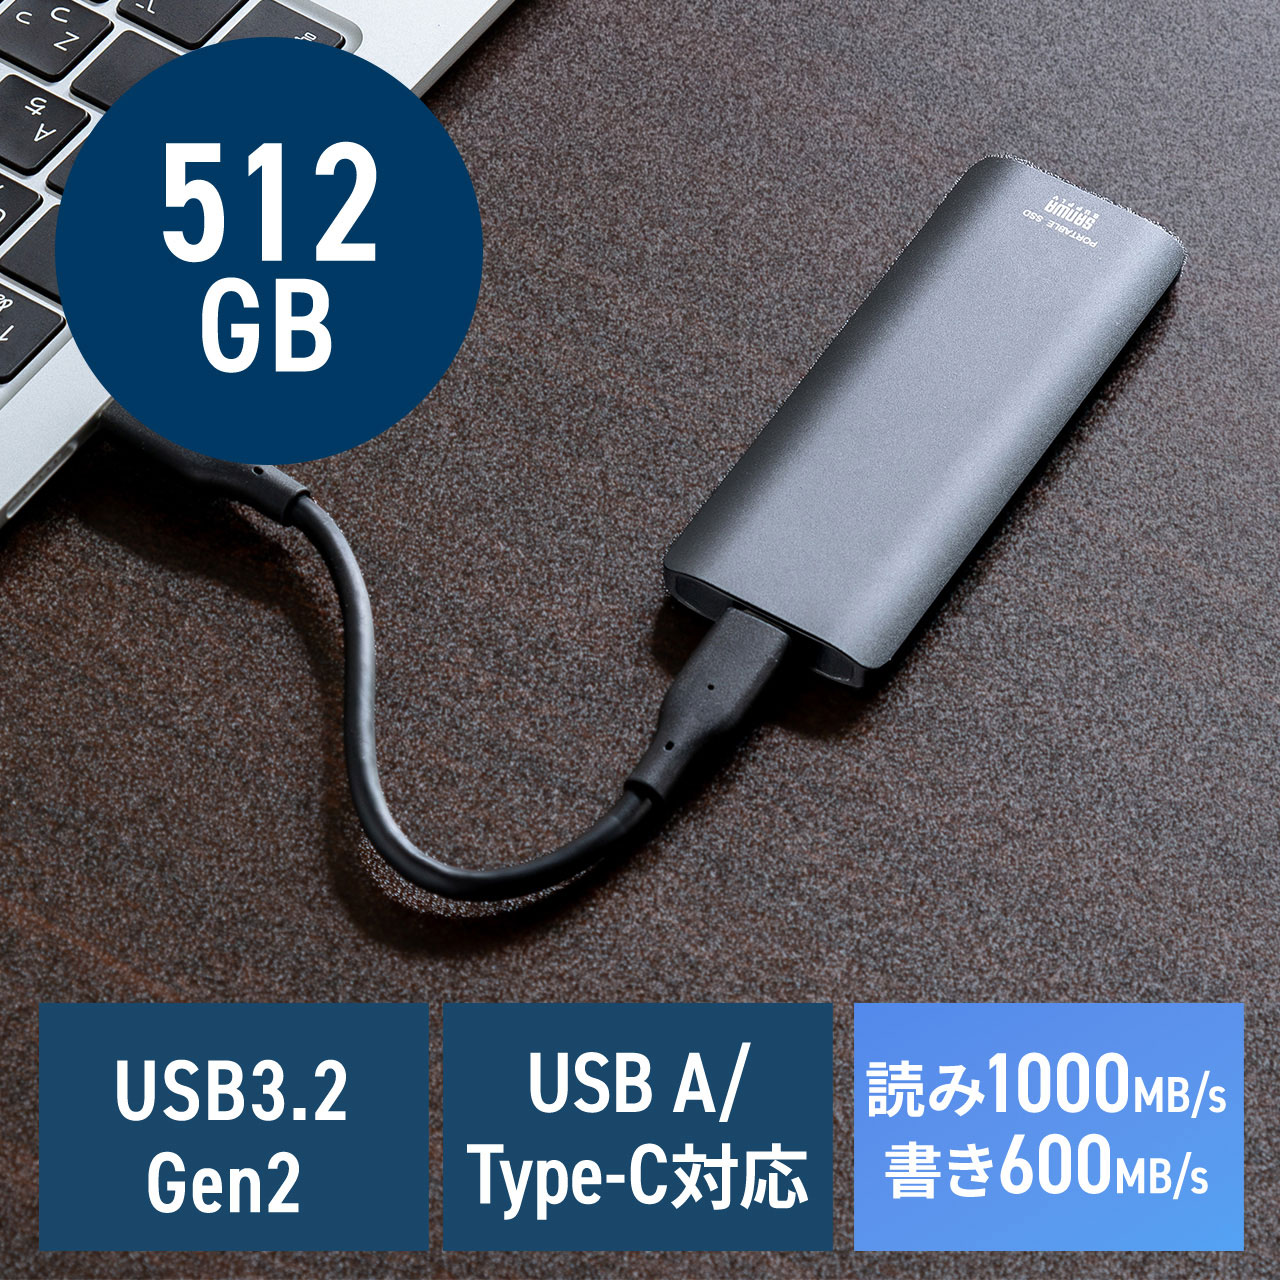 ポータブルSSD 外付け USB3.2 Gen2 512GB 最大読み込み速度約1000MB/s